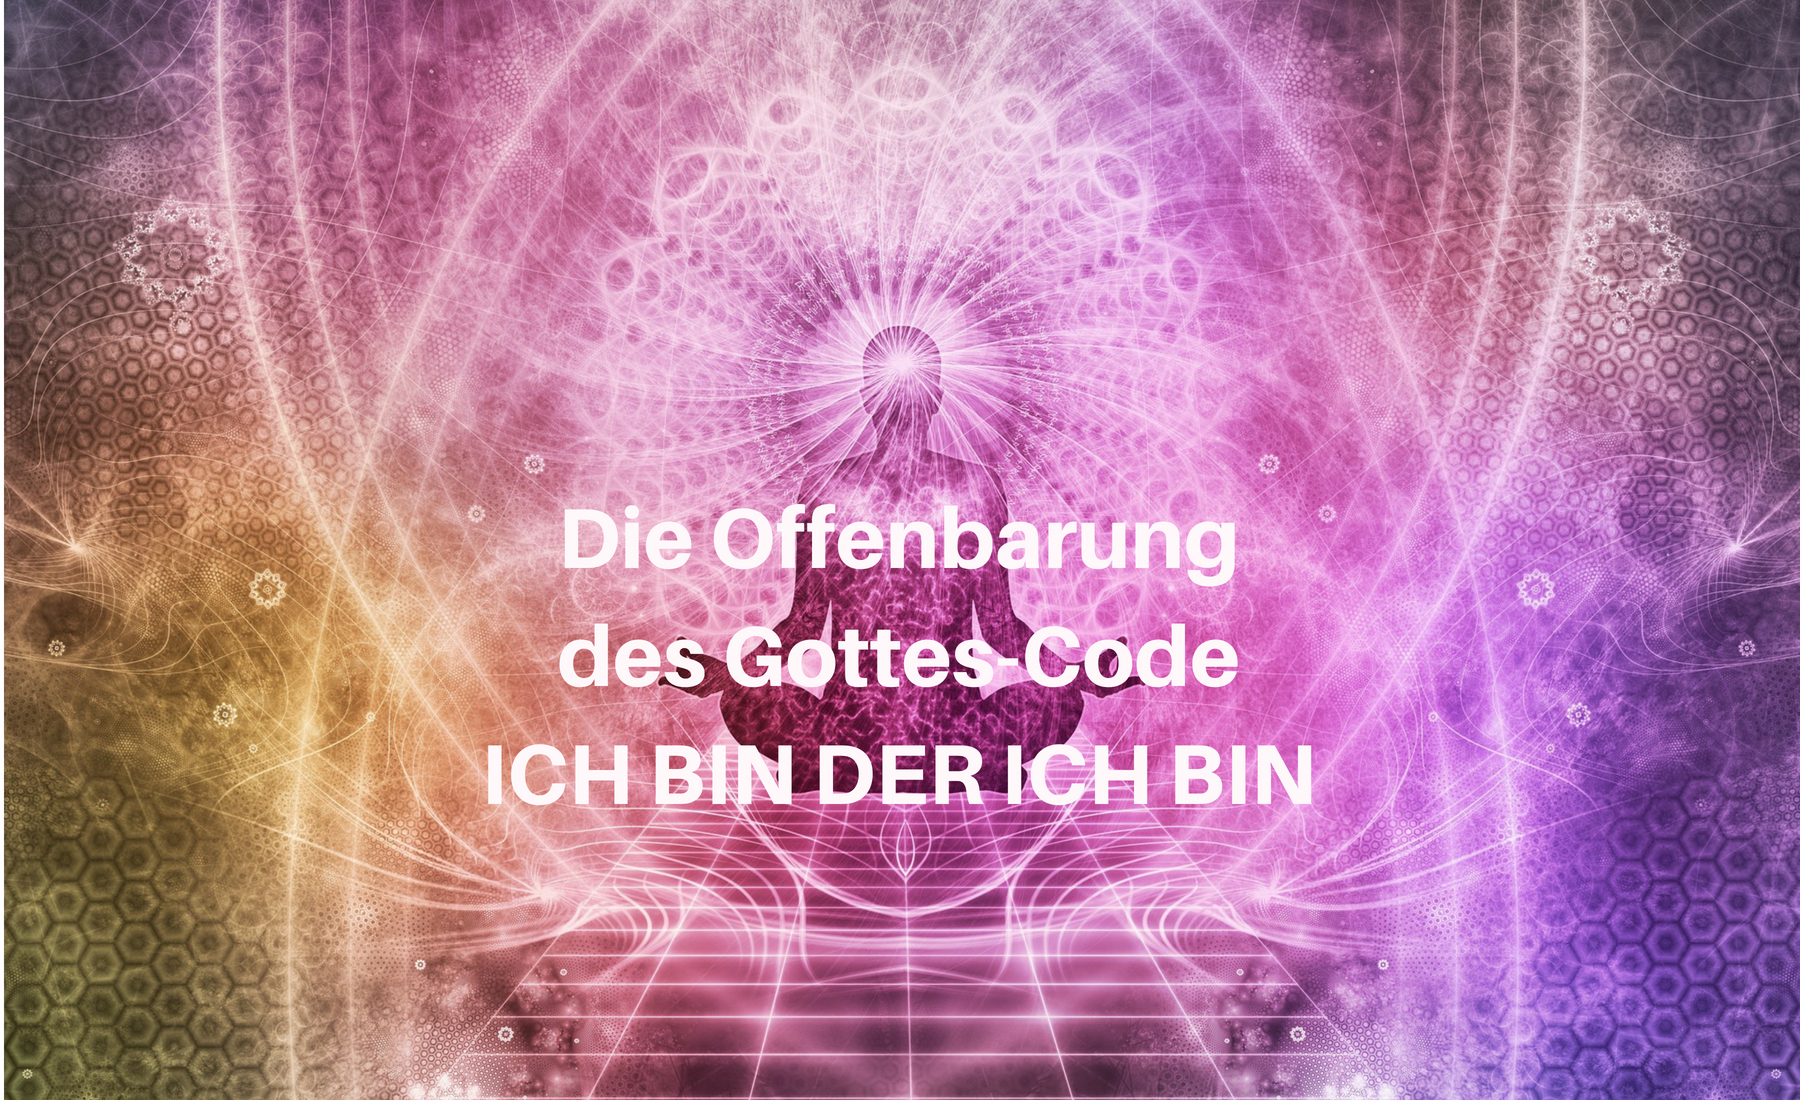 Gottes-Code